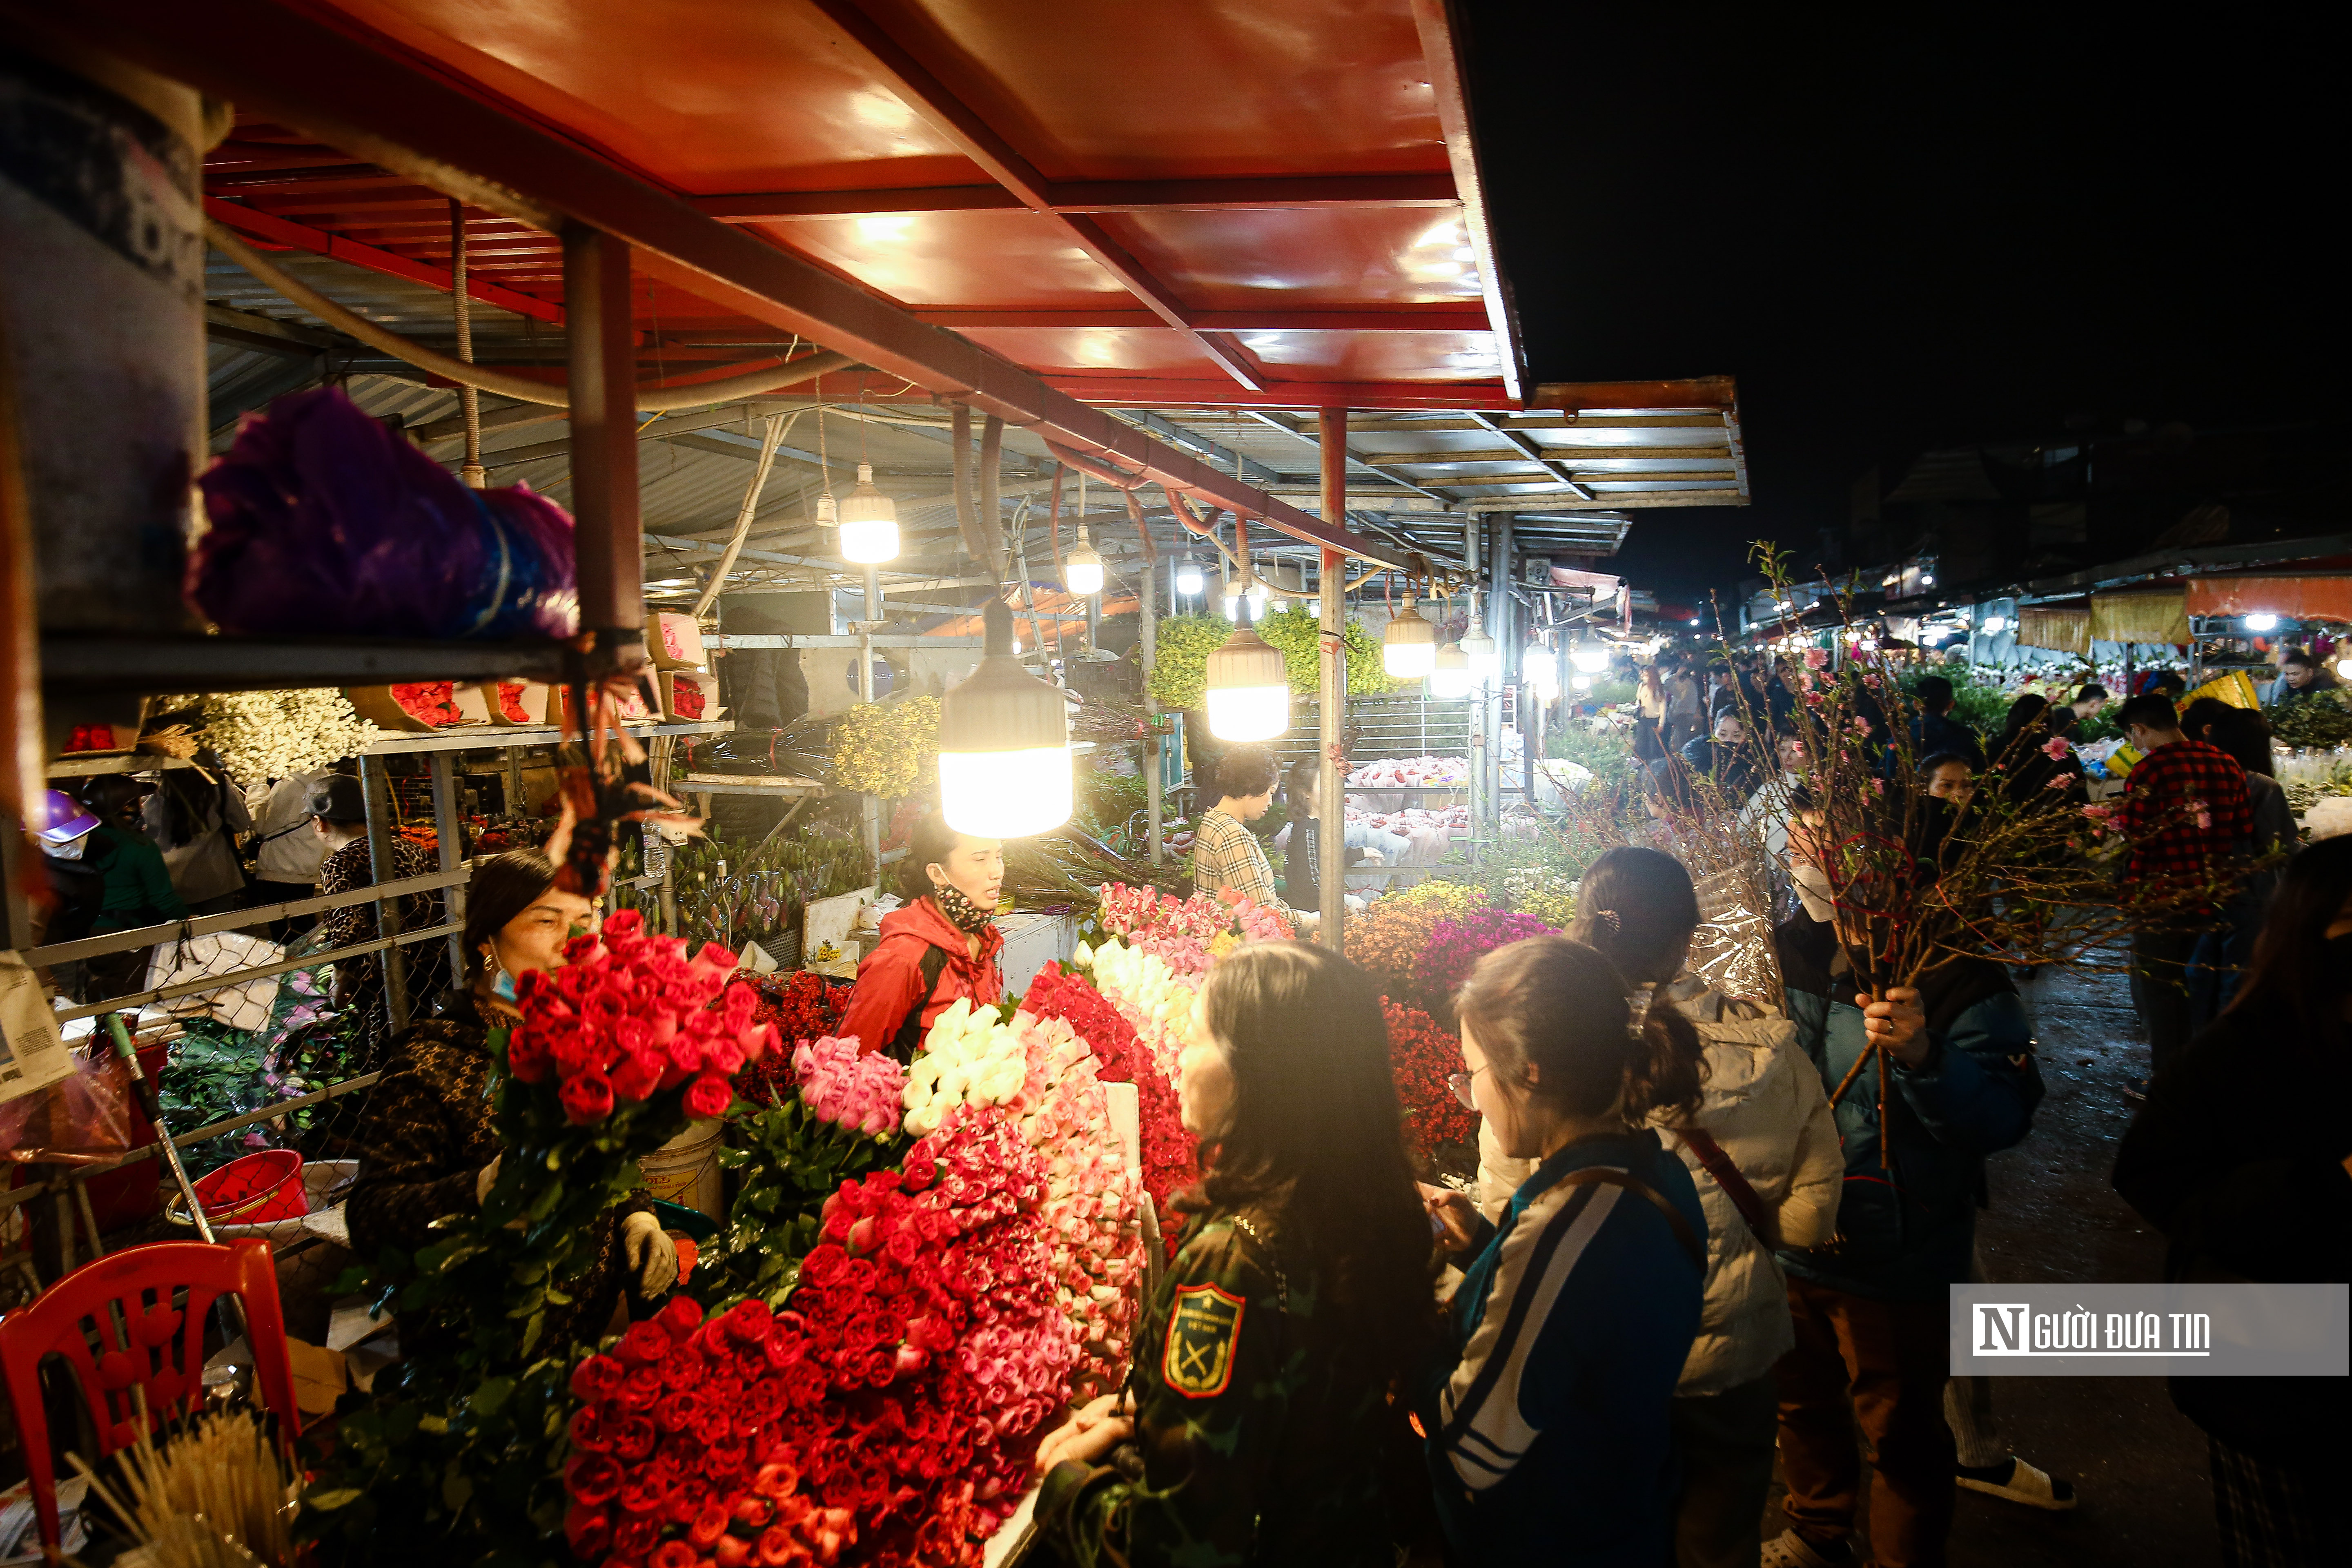 Dân sinh - Khung cảnh tấp nập tại chợ hoa Quảng An ngày cận Tết (Hình 8).